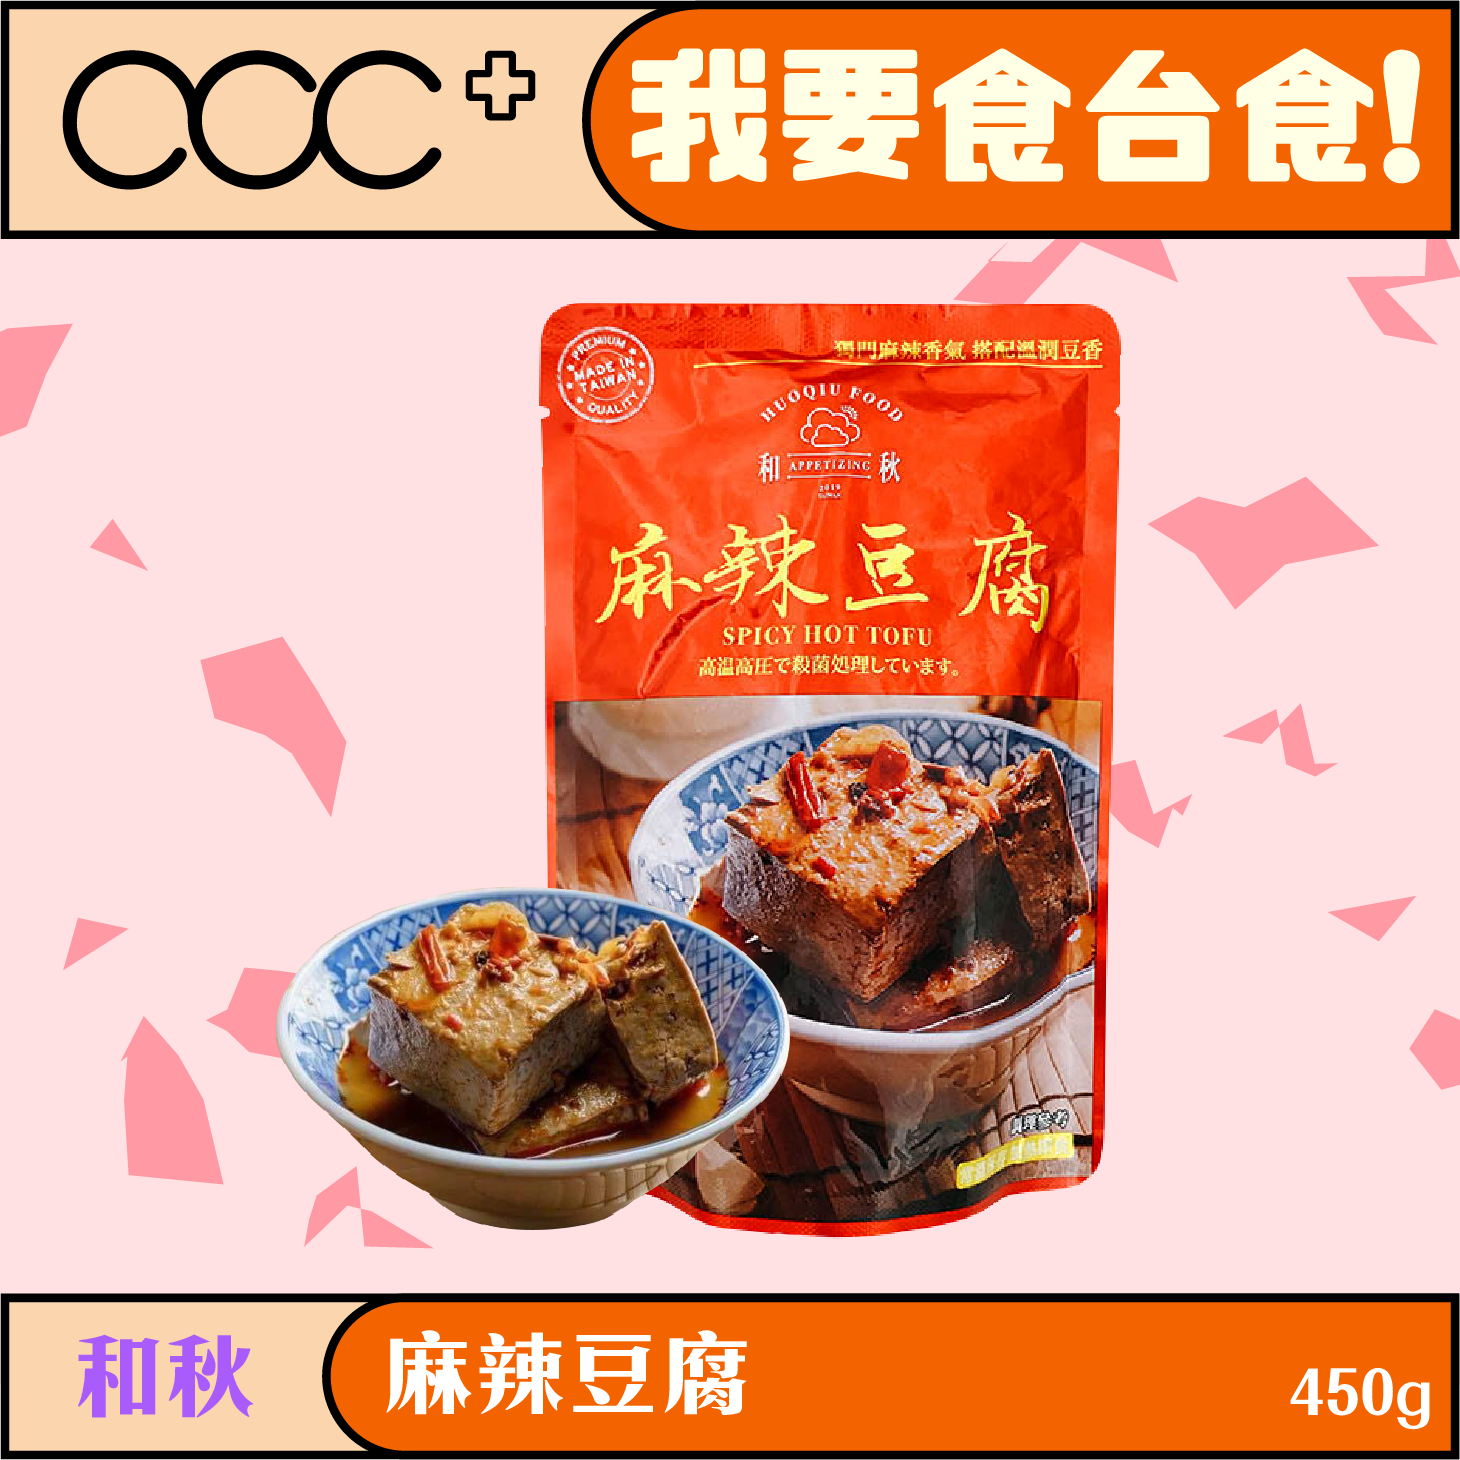 Heqiu Spicy Tofu